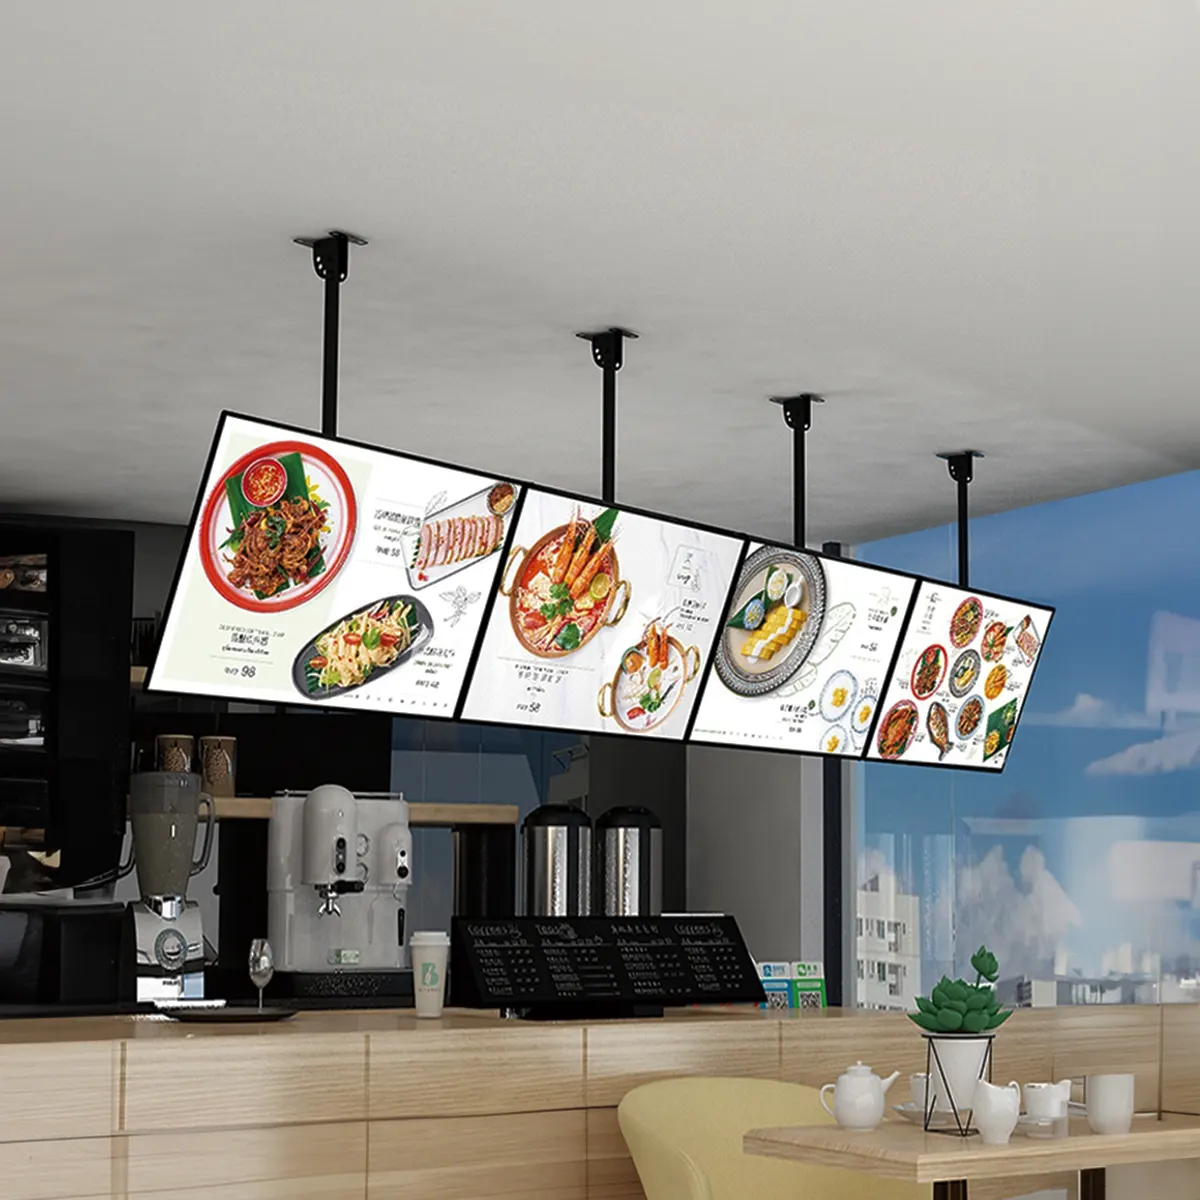 slim lightboxes for menu displays in restaurants